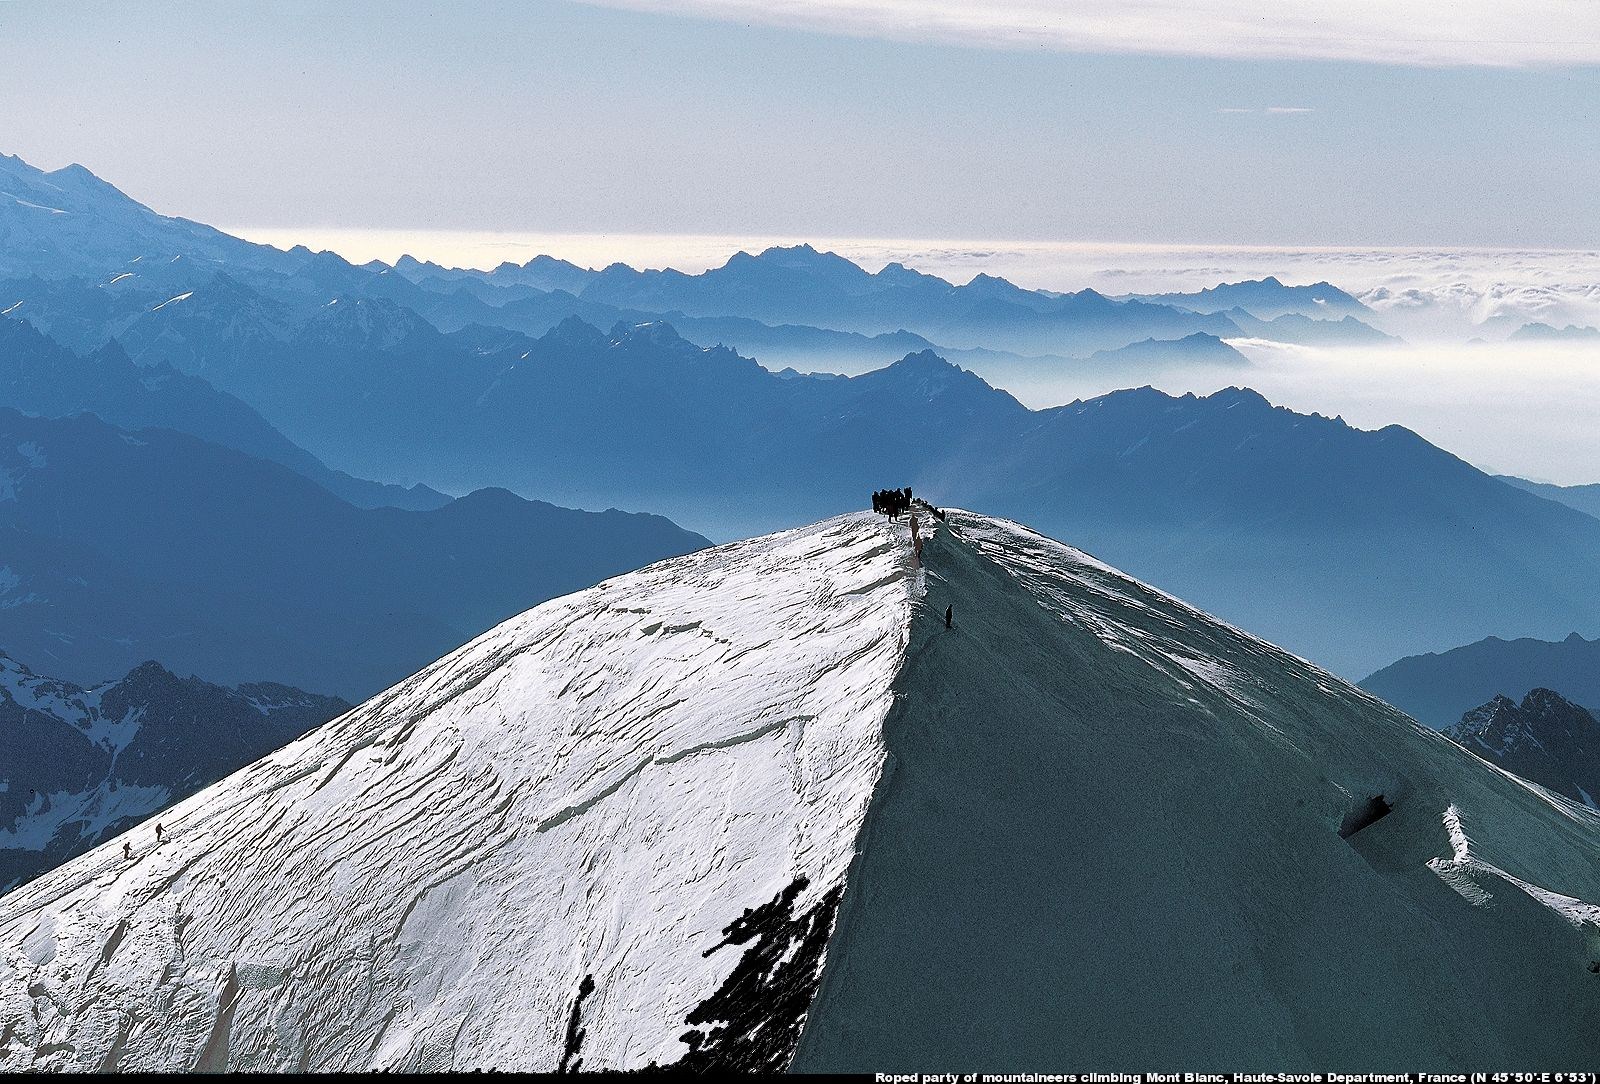 Alpinistes au sommet du mont Blanc, Haute-Savoie, France N 4550'-E 653'